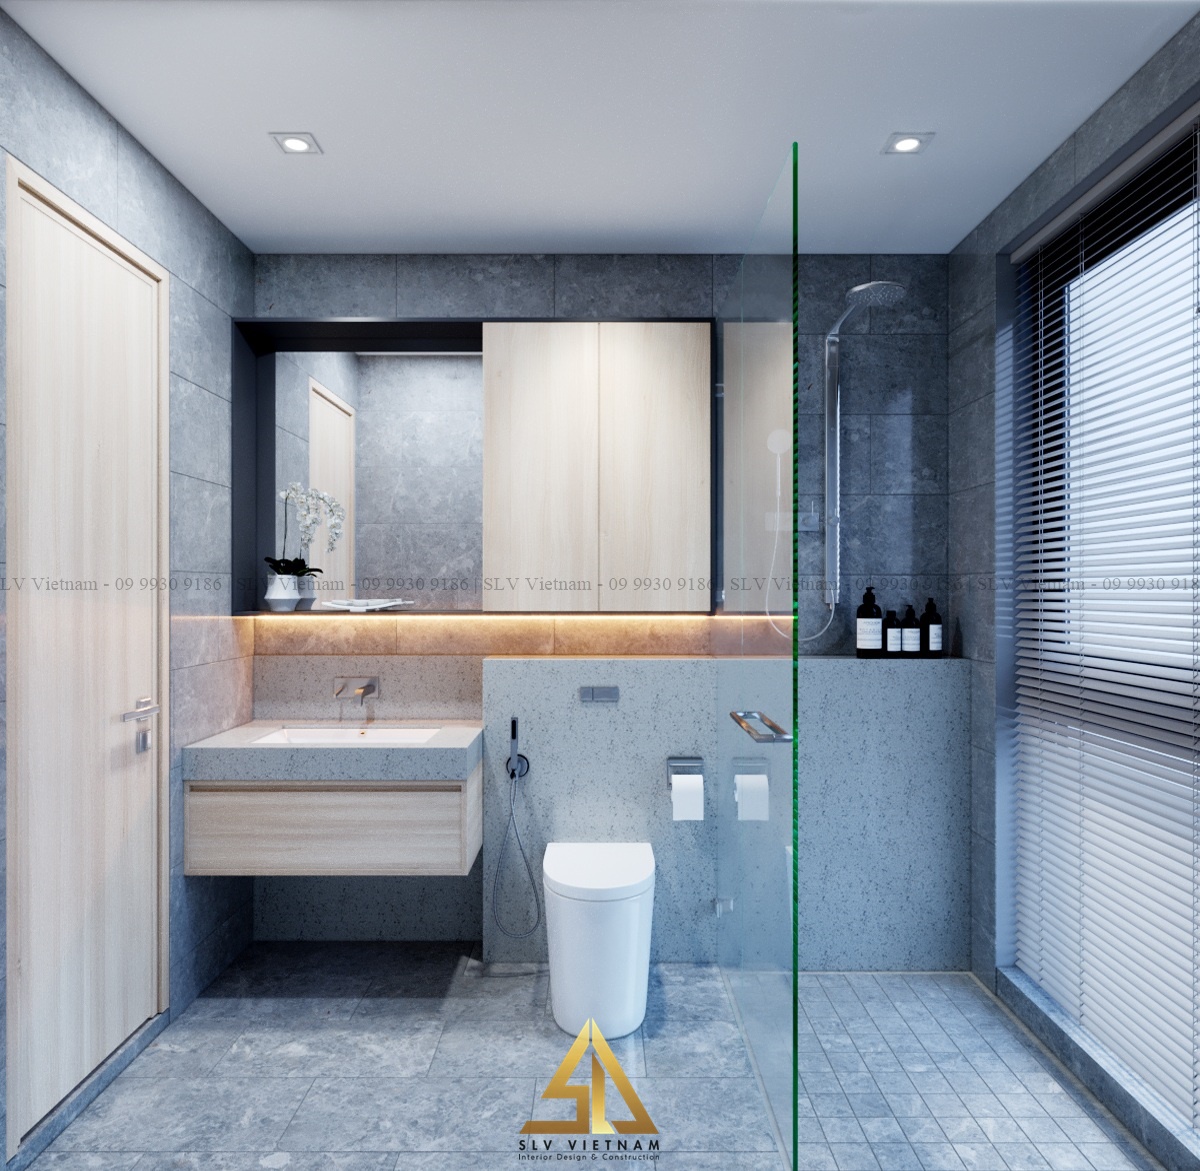 Lắp đặt ánh sáng cho phòng tắm đảm bảo tính năng khi sử dụng(Dự án của SLV Vietnam)